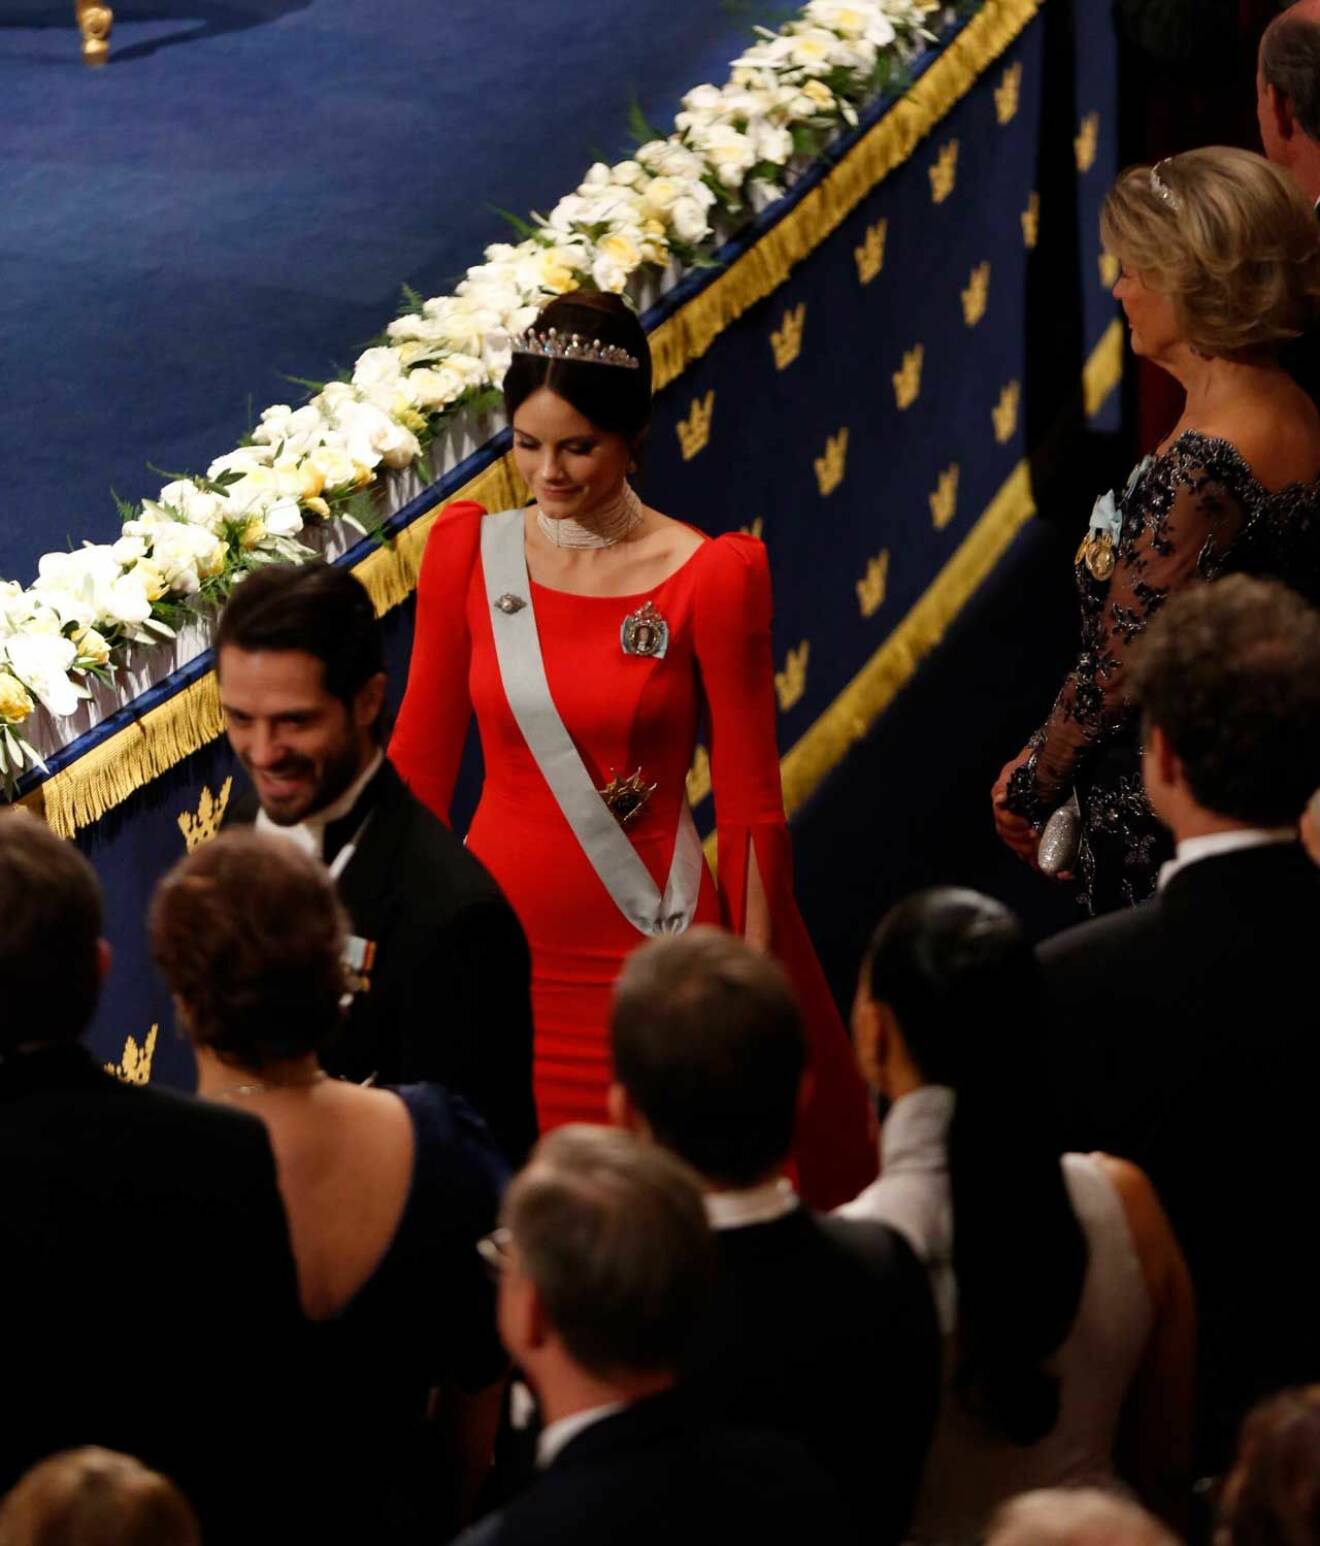 Prinsessan Sofia i röd klänning och tiara med pärlor